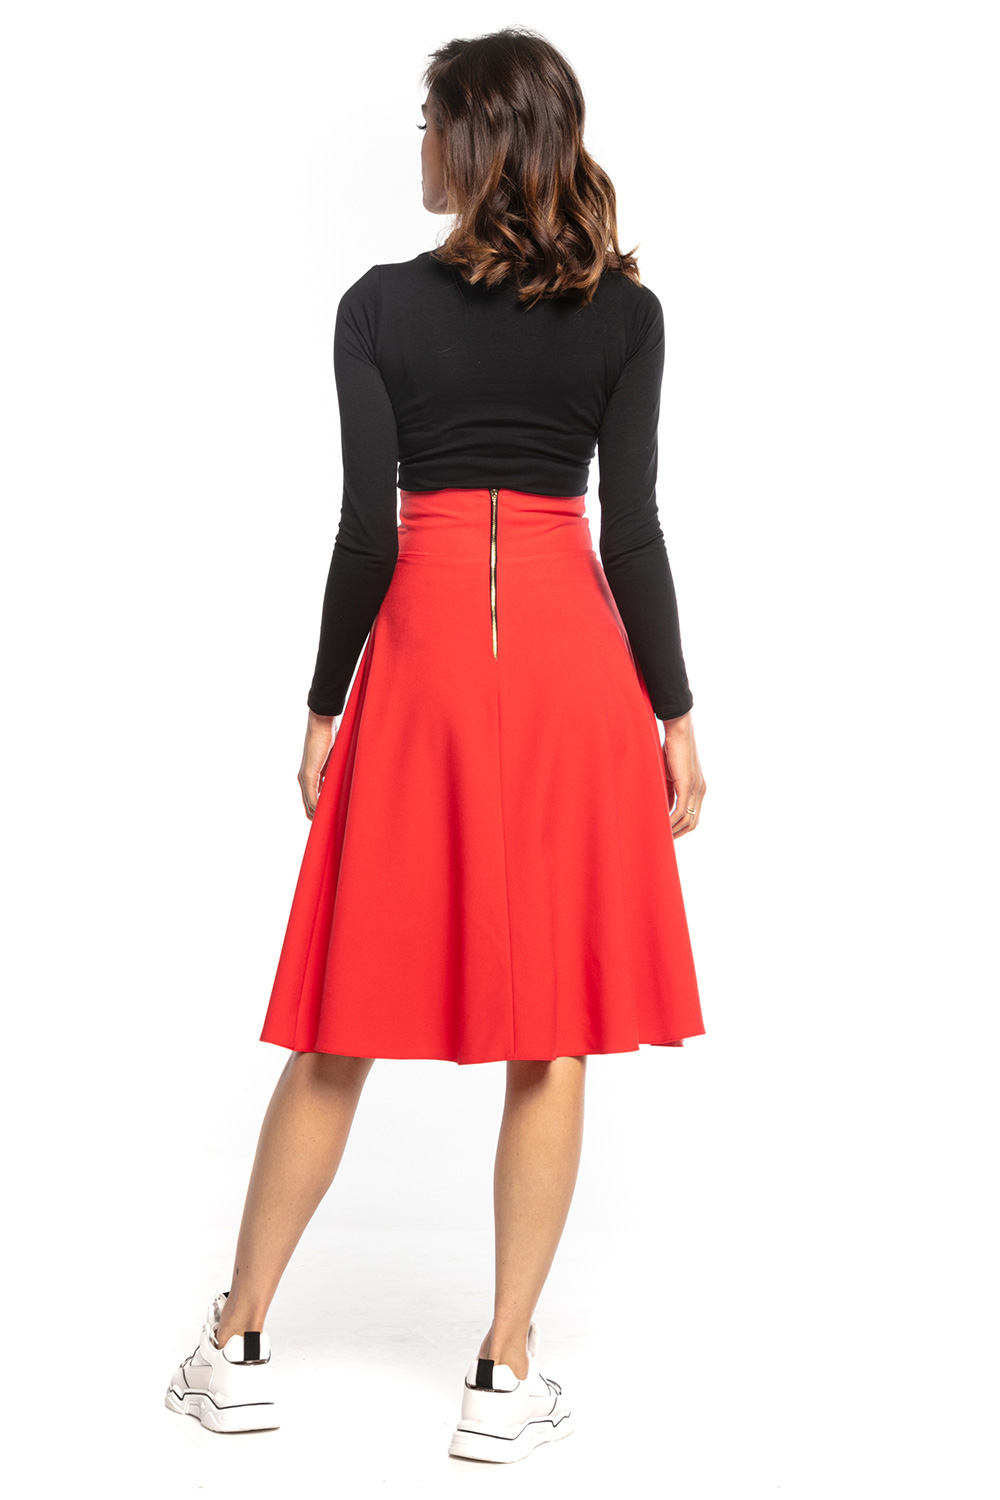  Skirt model 161865 Tessita  red